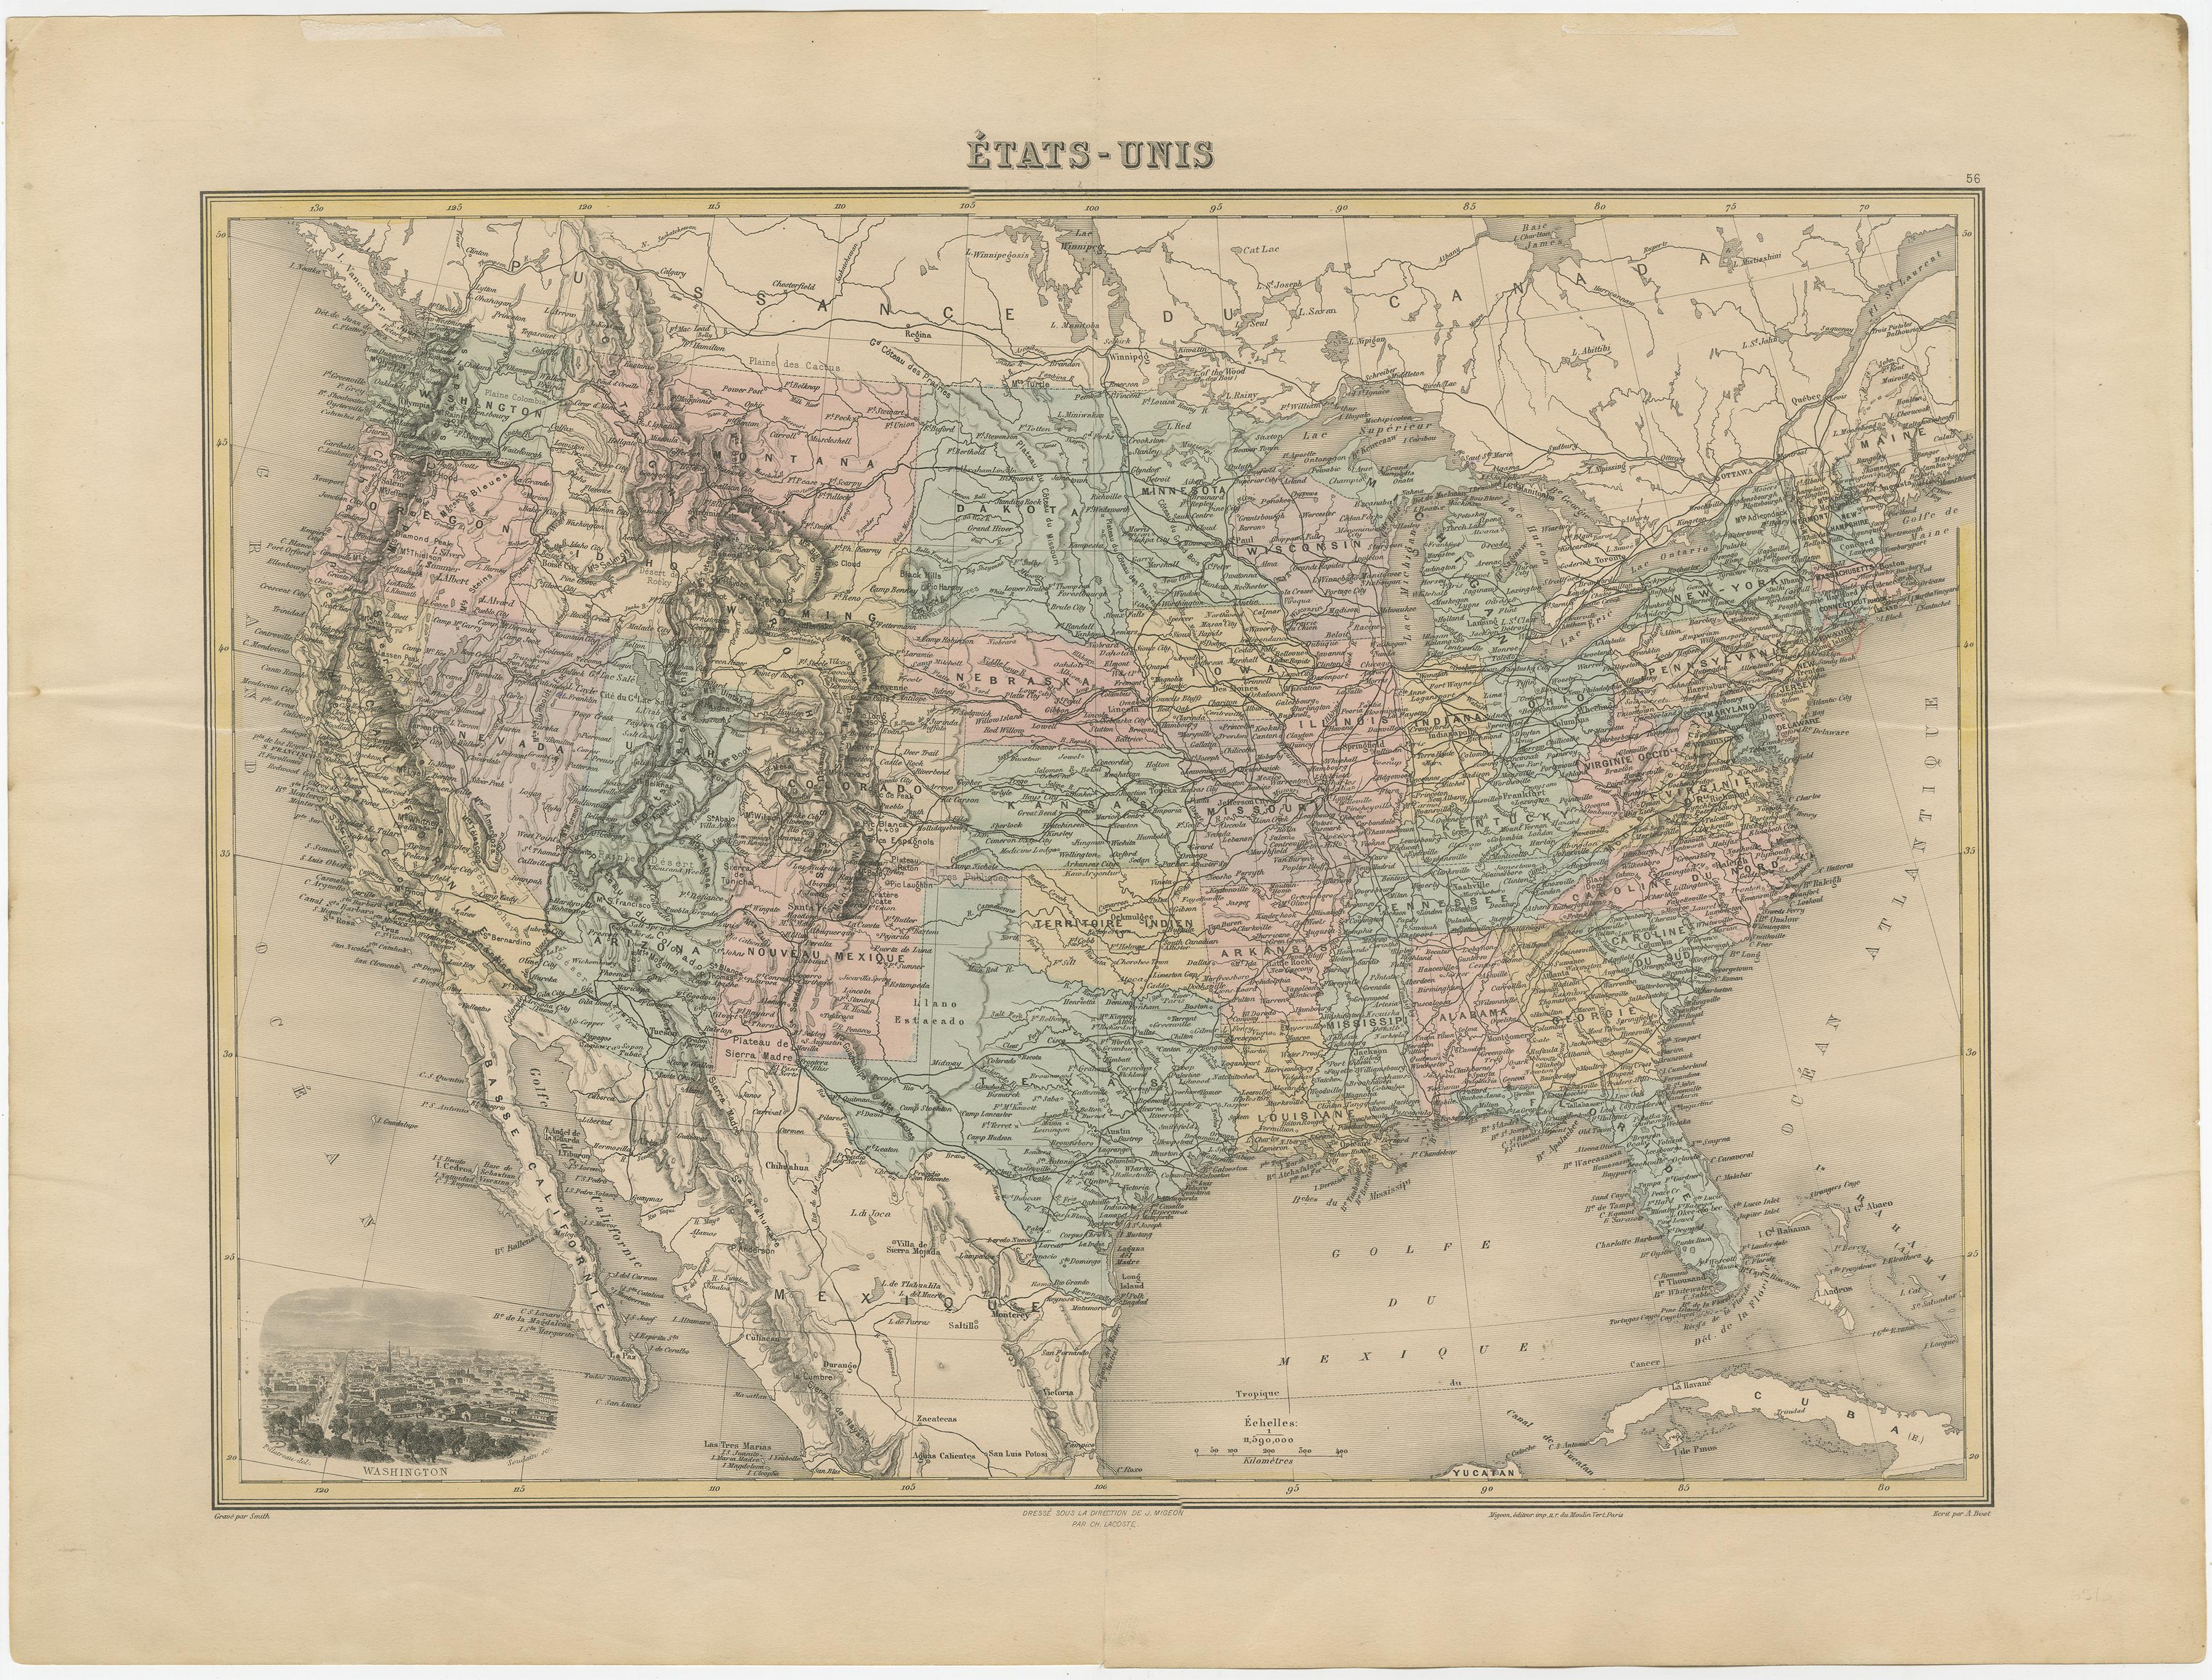 Antike Karte mit dem Titel 'États-Unis'. Eine sehr attraktive und detaillierte Karte der Vereinigten Staaten aus dem späten 19. Jahrhundert, mit einer schönen dekorativen Vignette von Washington. Das ausgedehnte Eisenbahnnetz, das zu dieser Zeit in